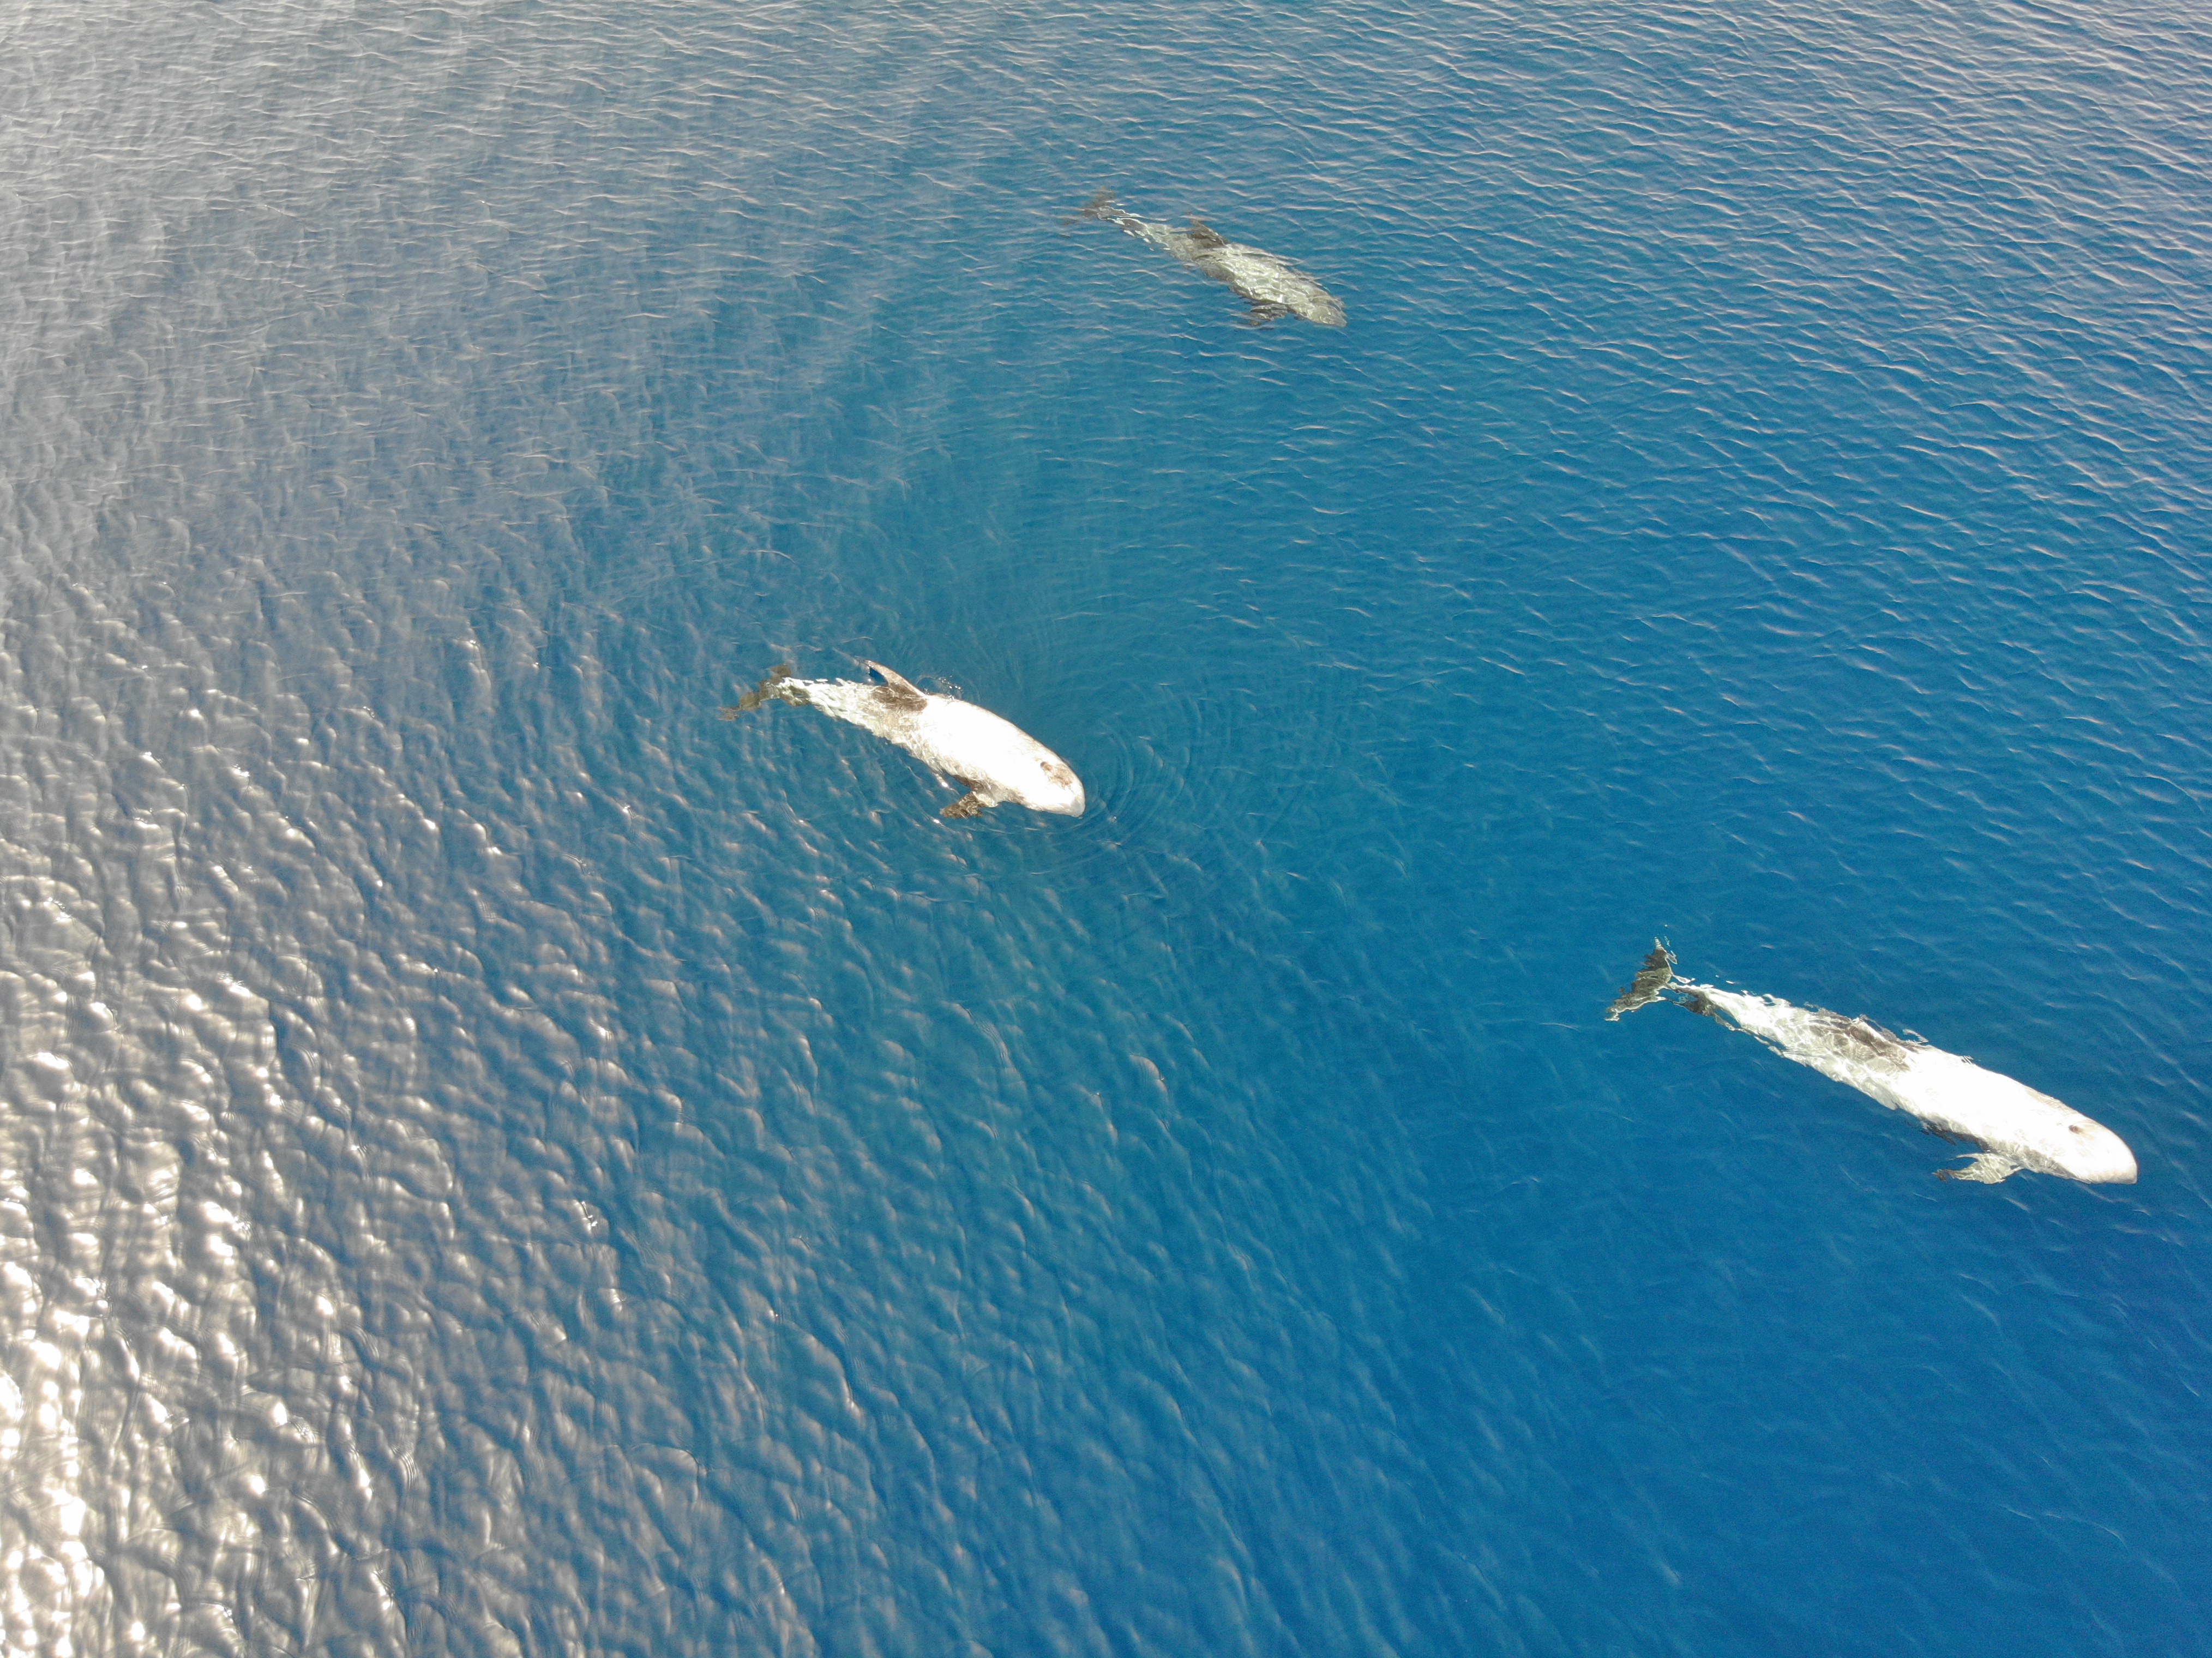 צפו: להקת דולפינים מסוג גרמפוס תועדה במפרץ אילת